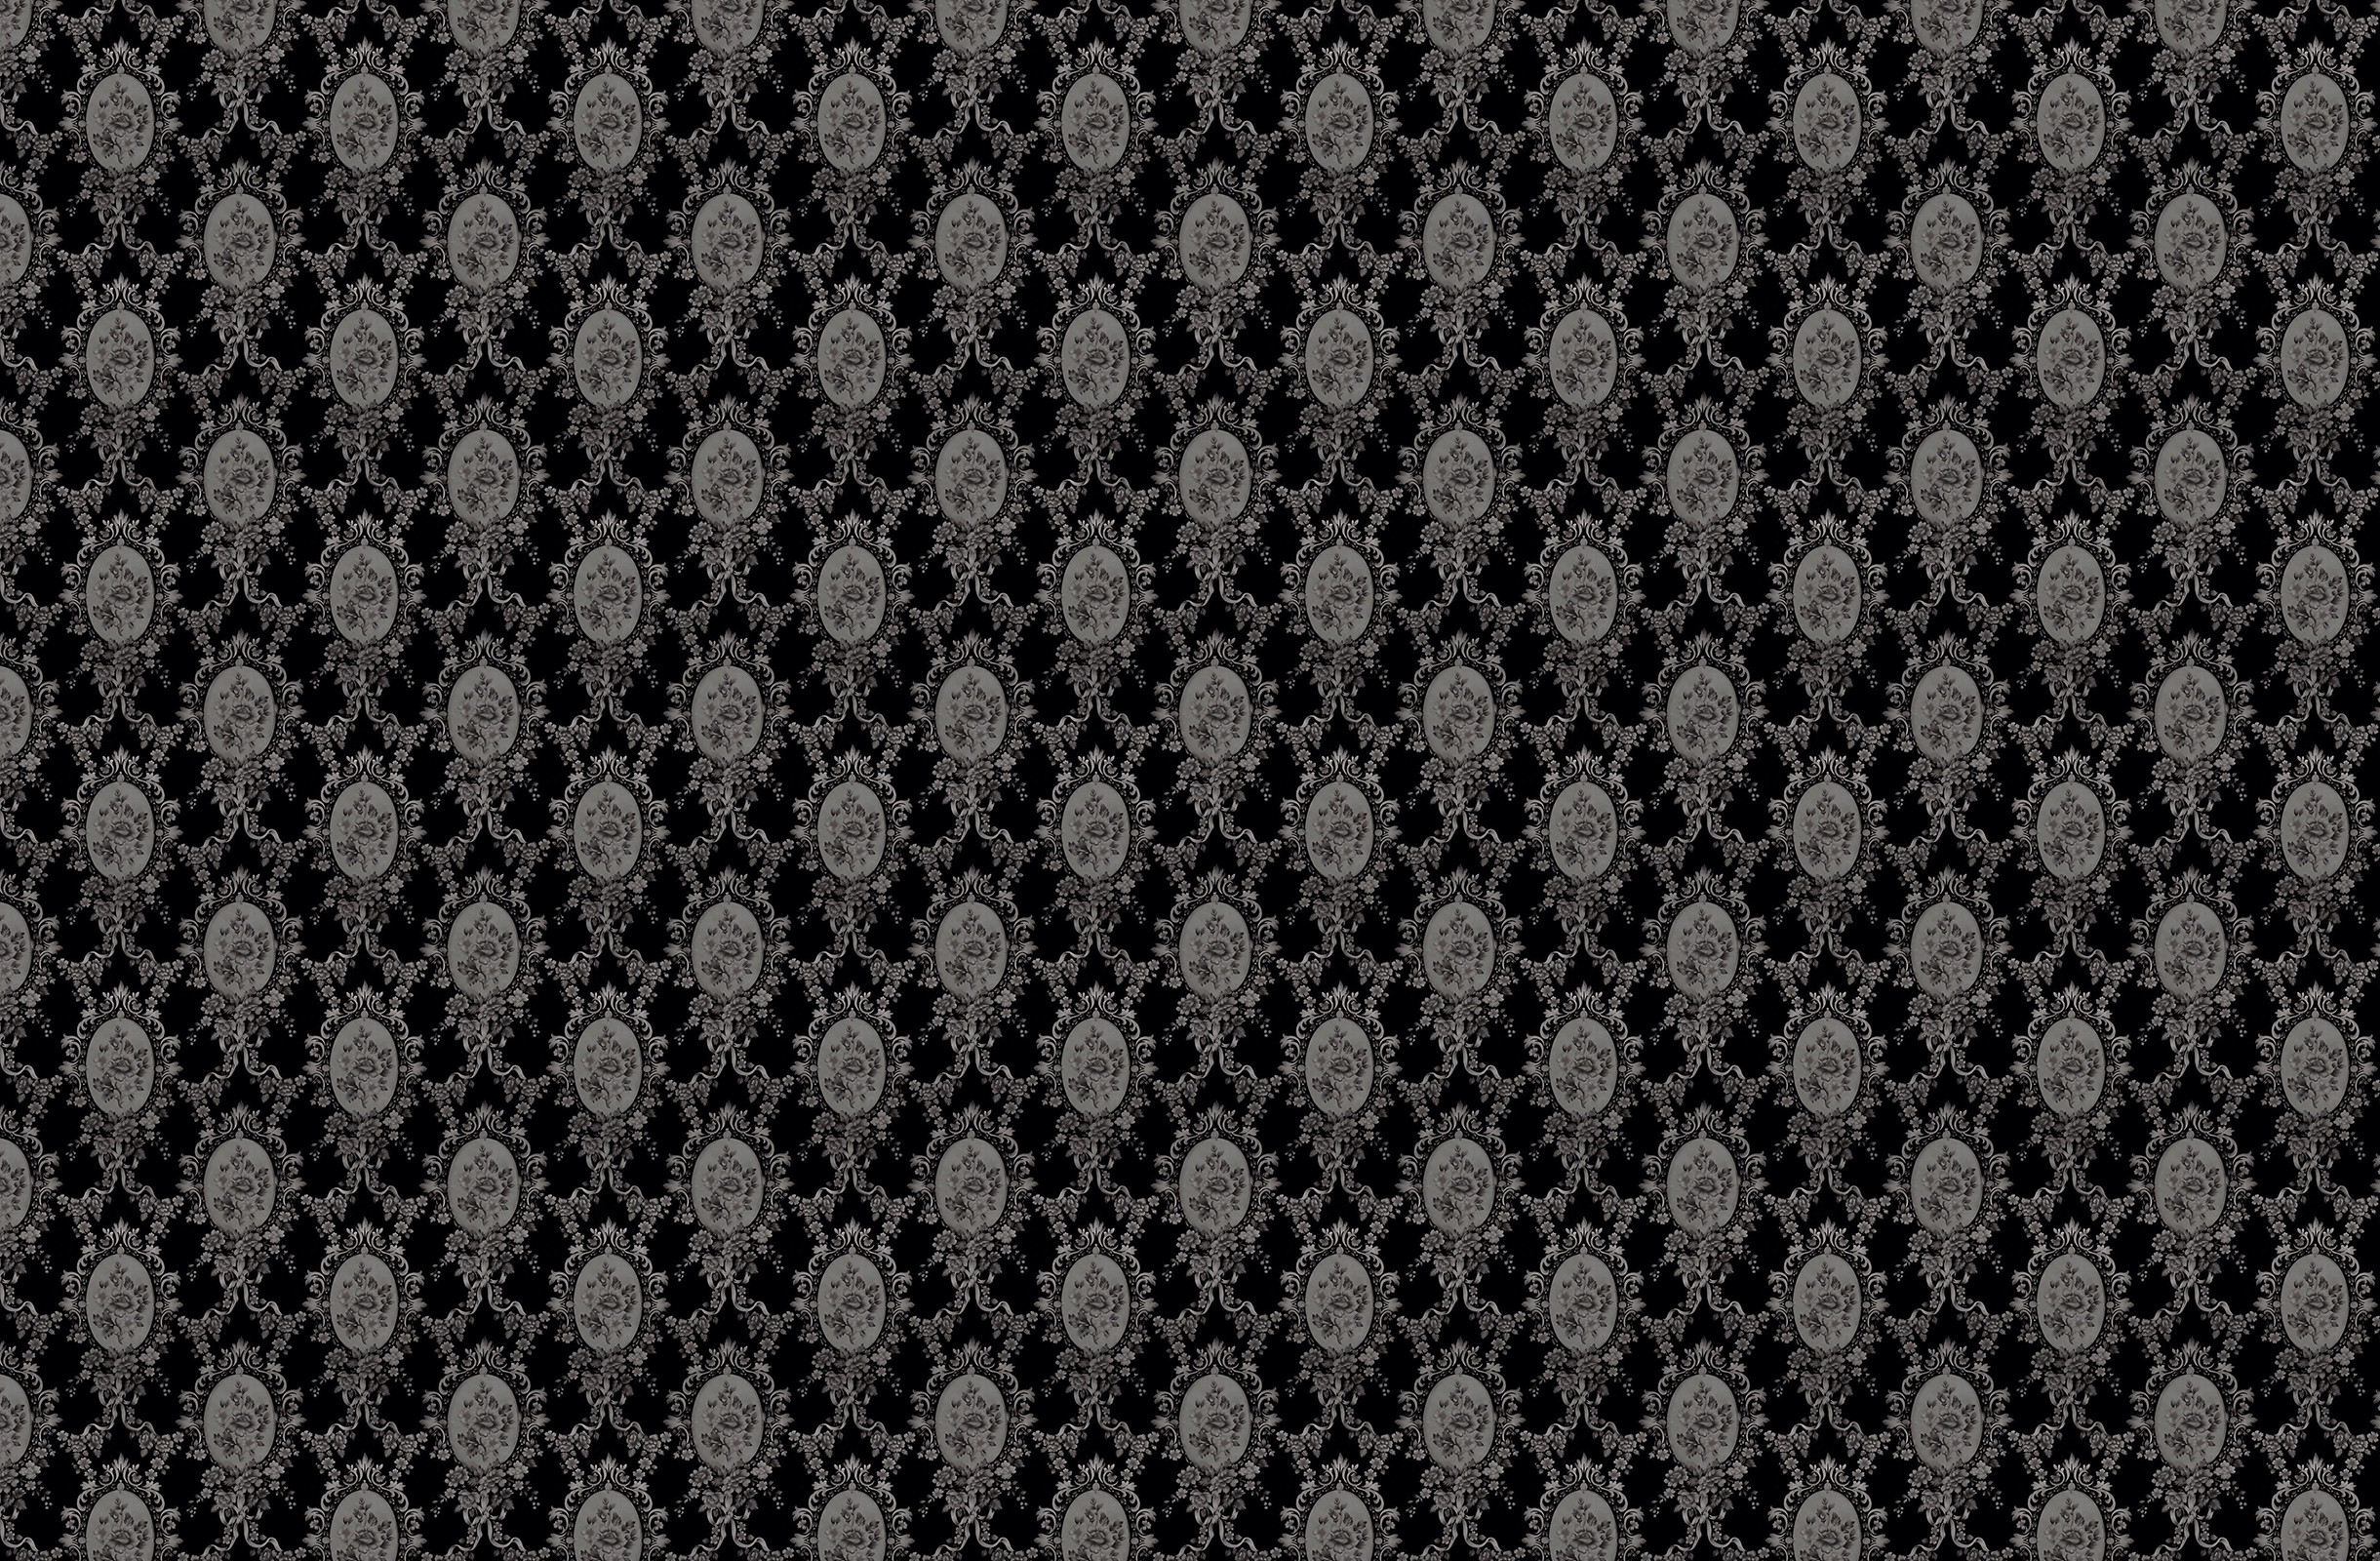 Black White Victorian Wallpaper Background Stock Illustration 119720182   Shutterstock